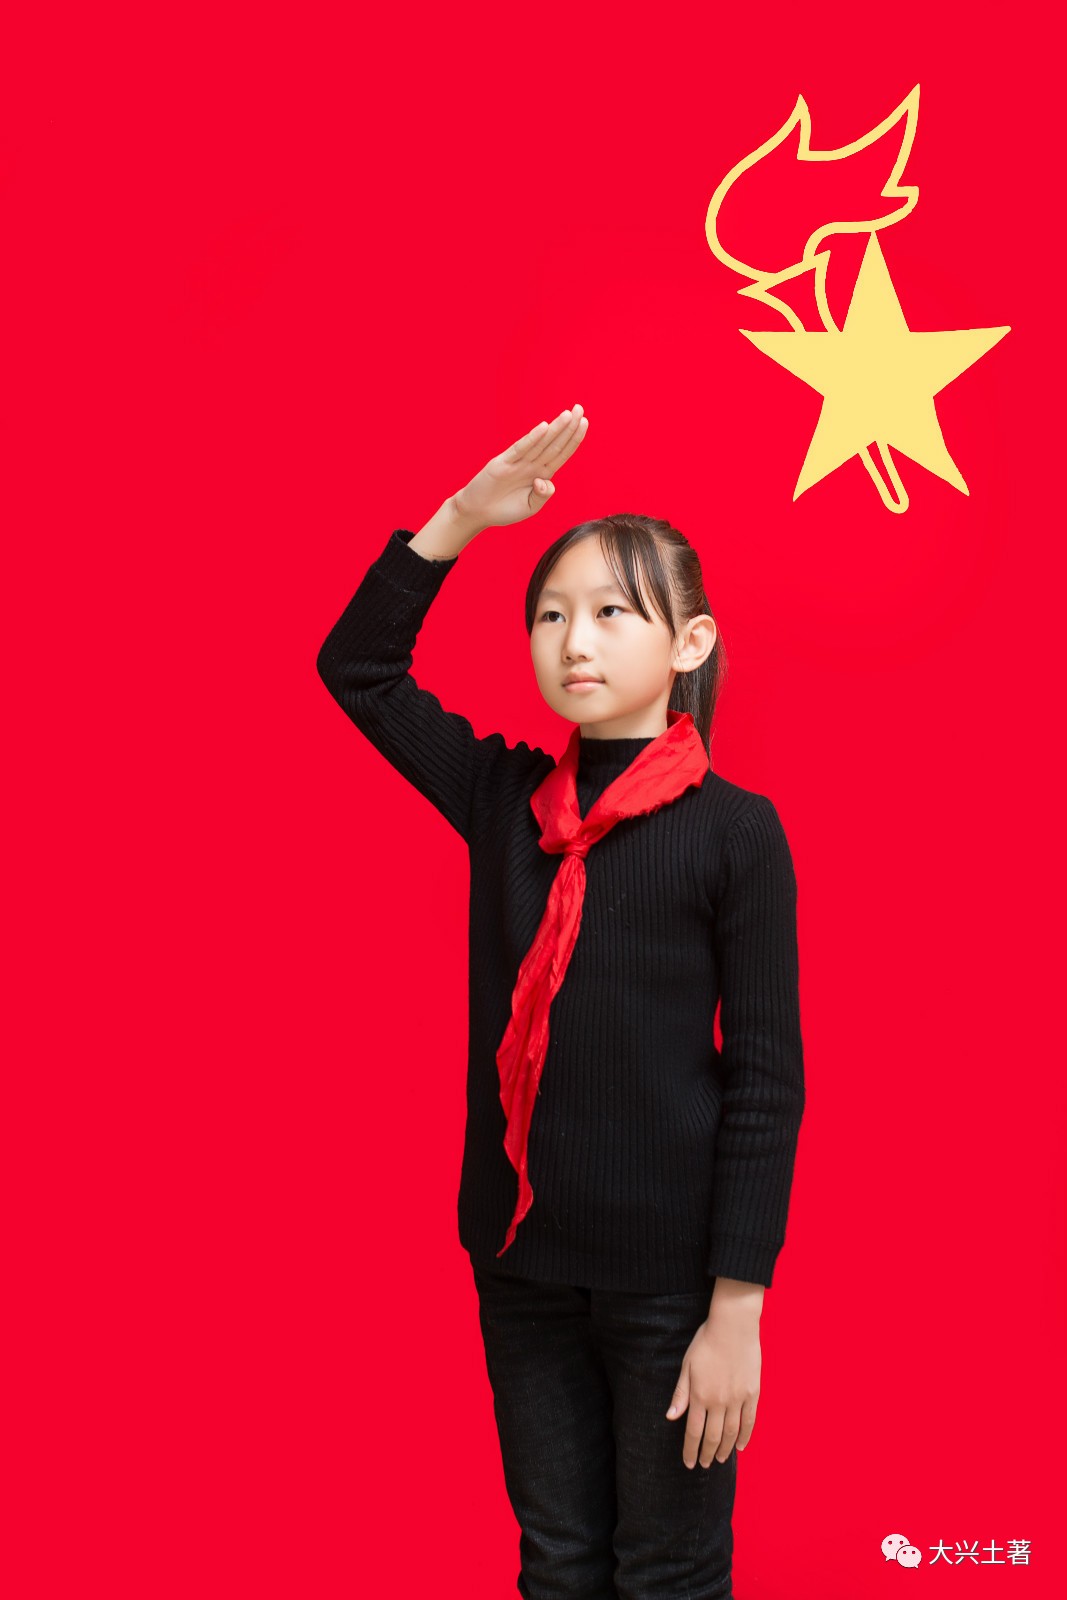 飞扬的红领巾丨照片还能这么拍?大兴第三中心小学少先队员风采展示